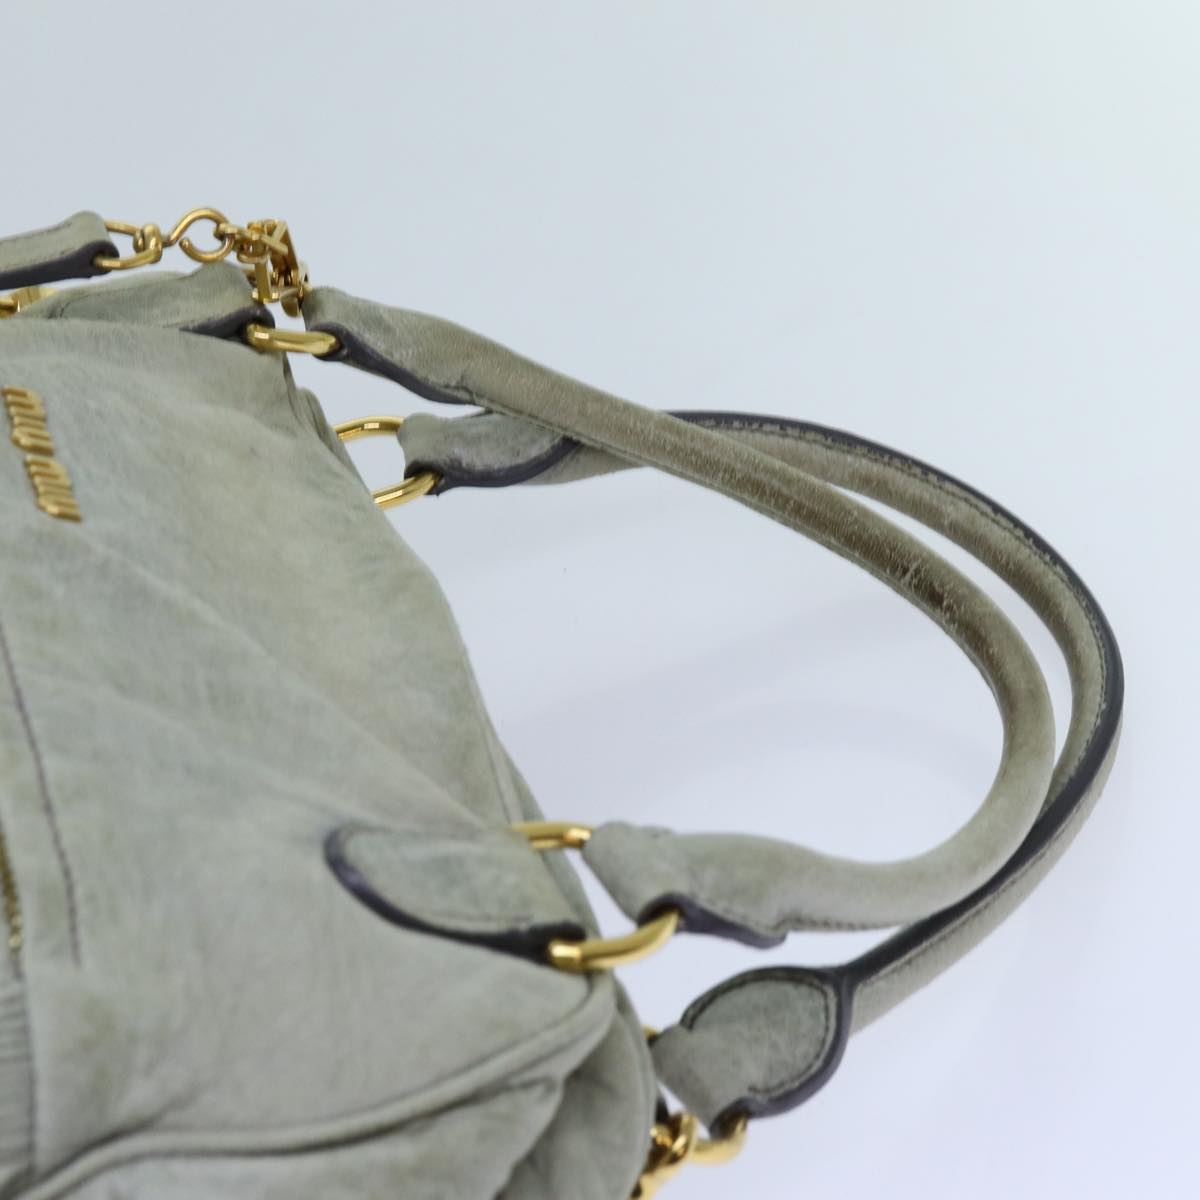 Miu Miu Hand Bag Leather 2way Gray Auth hk1213